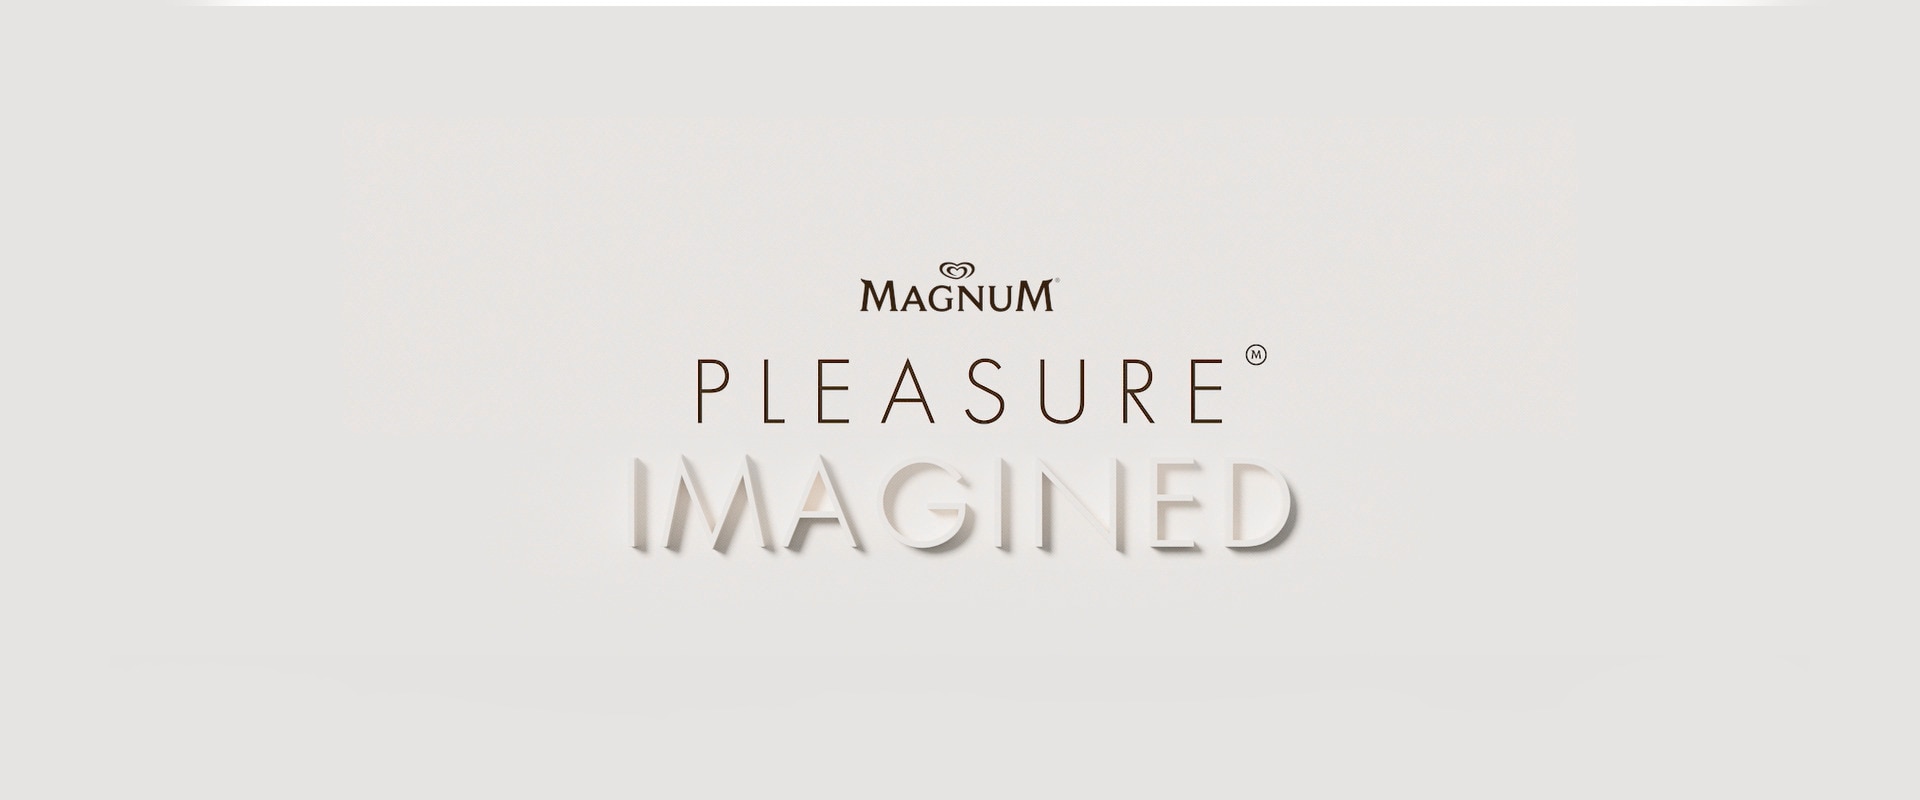 Neem een kijkje in de post-lockdown wereld met Magnums 'Pleasure Imagined'